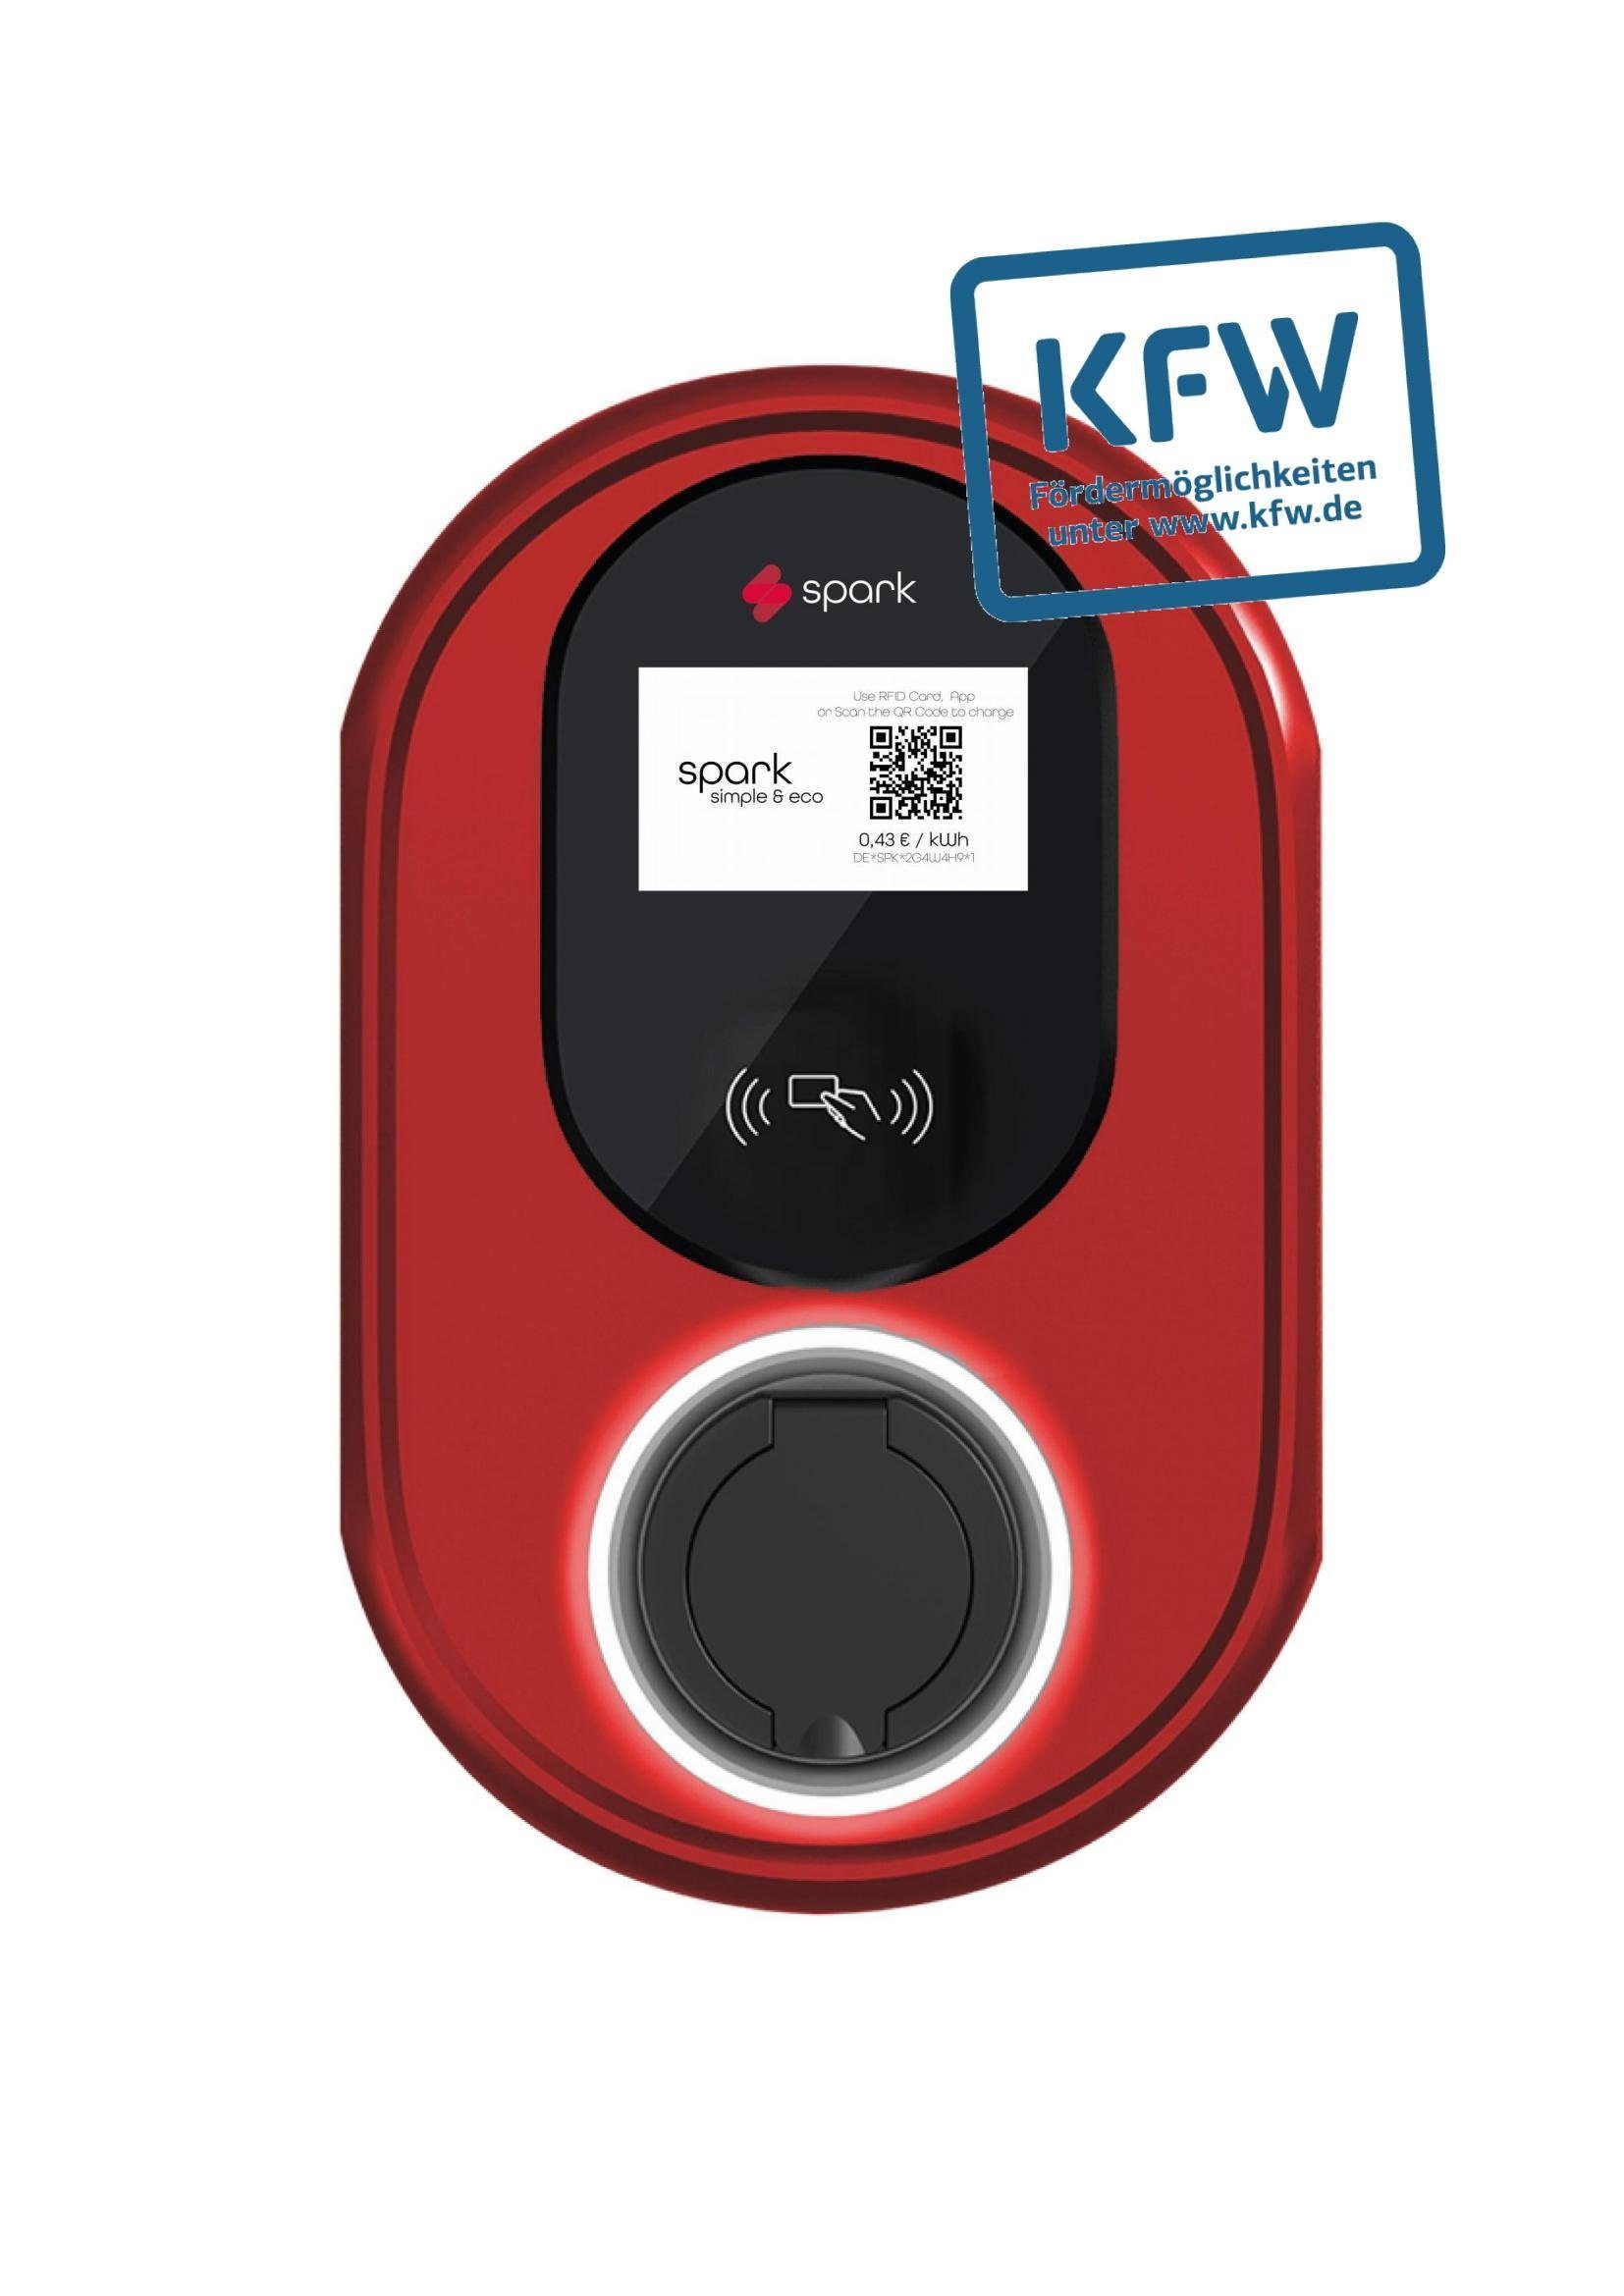 Spark stationäre Elektroauto-Ladestation (KfW) 11KW Wallbox - 5M Kabel -RFID-MID-FI-Schutz-Touchscreen-4G-WIFI, 11,00kW / 16A, 3-phasig, IP65, für Innen- und Außenbereich (Garage, Carport) Milano Red